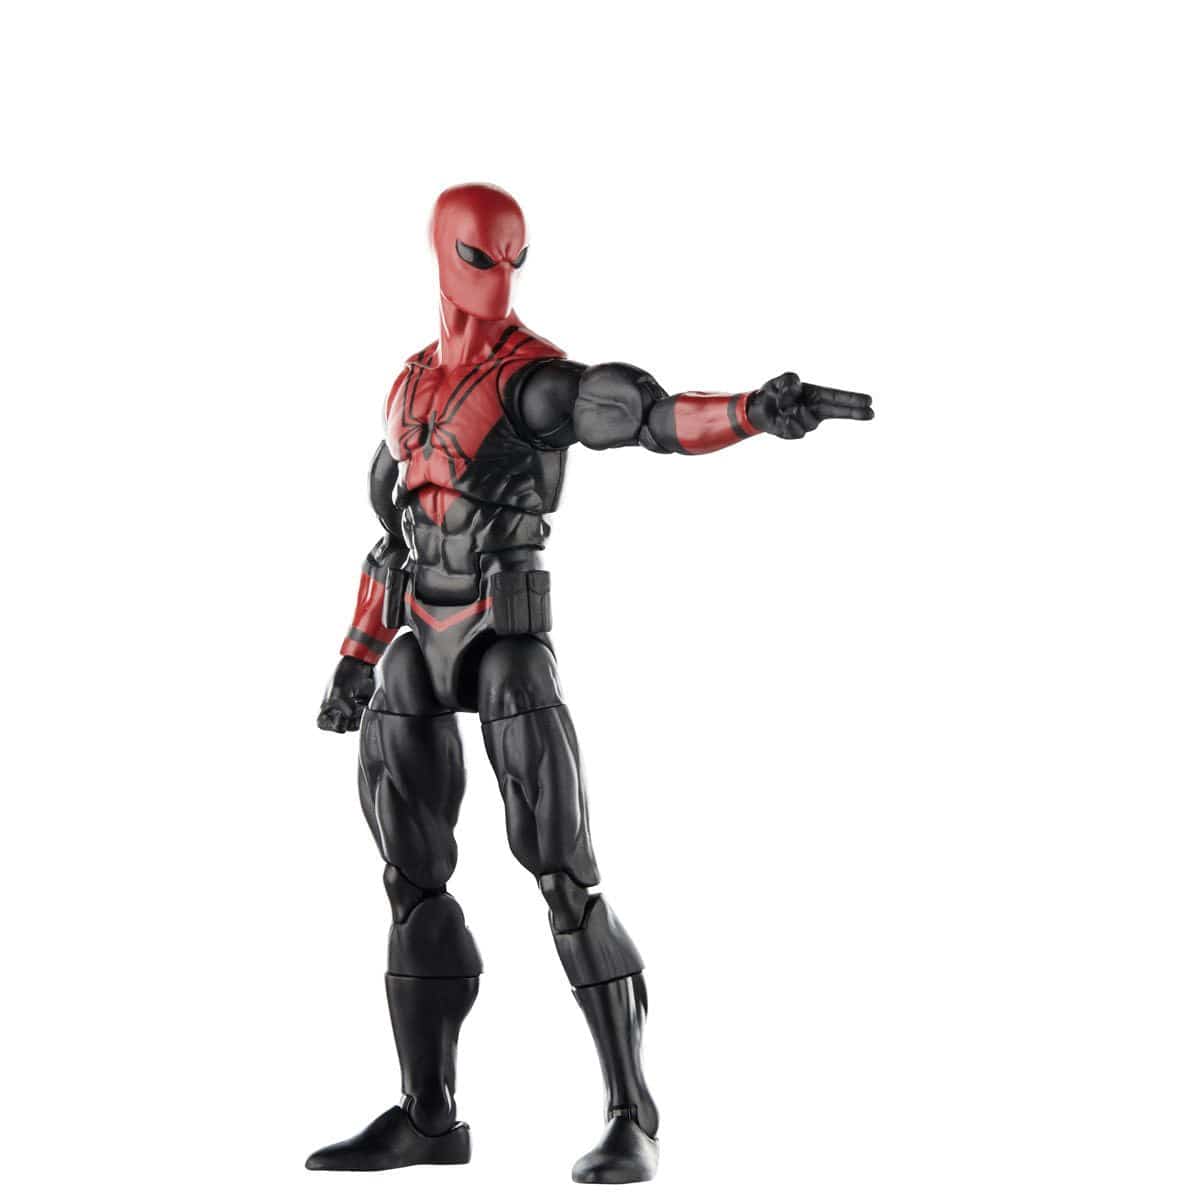 Spider-Man Marvel Legends Comic 6-inch Spider-Shot Action Figure